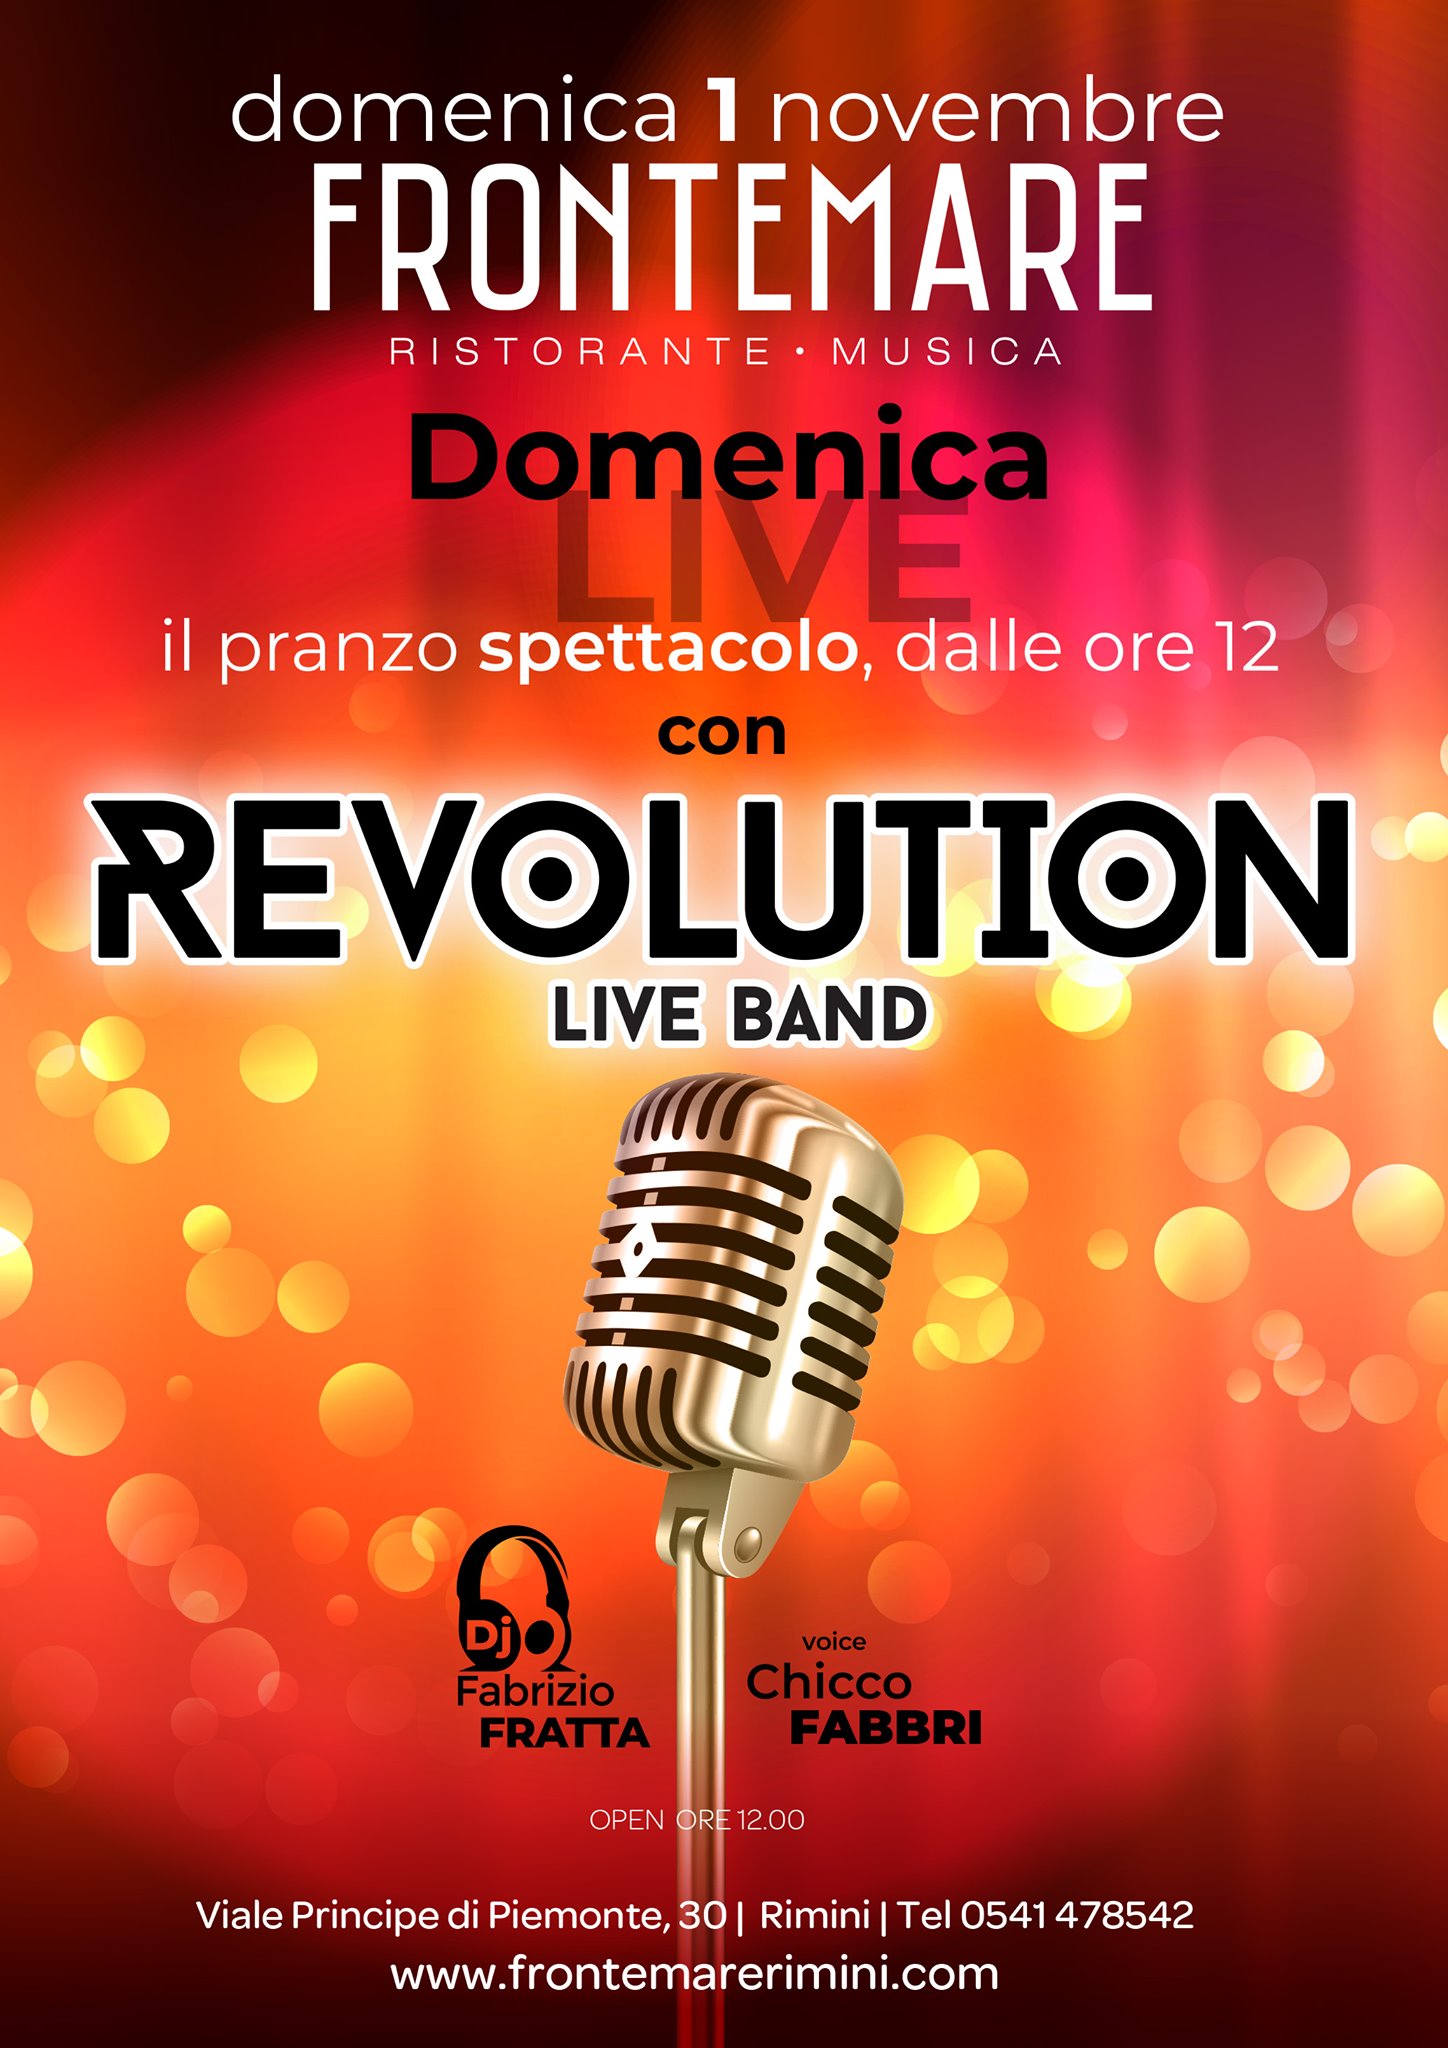 Il pranzo spettacolo con Revolution live band al Frontemare di Rimini